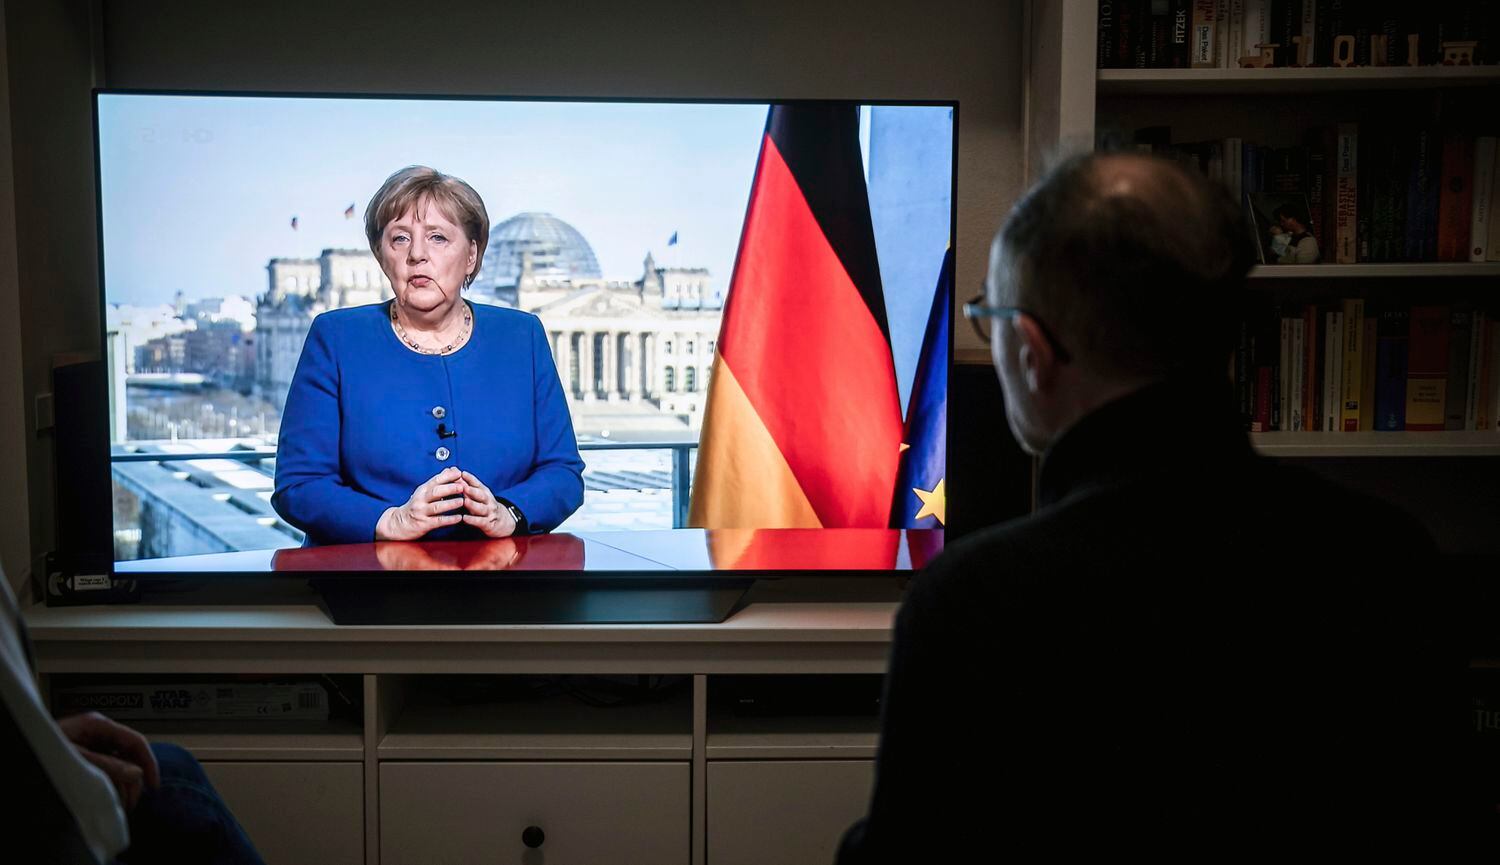 Alemão assiste a Merkel falar na TV.